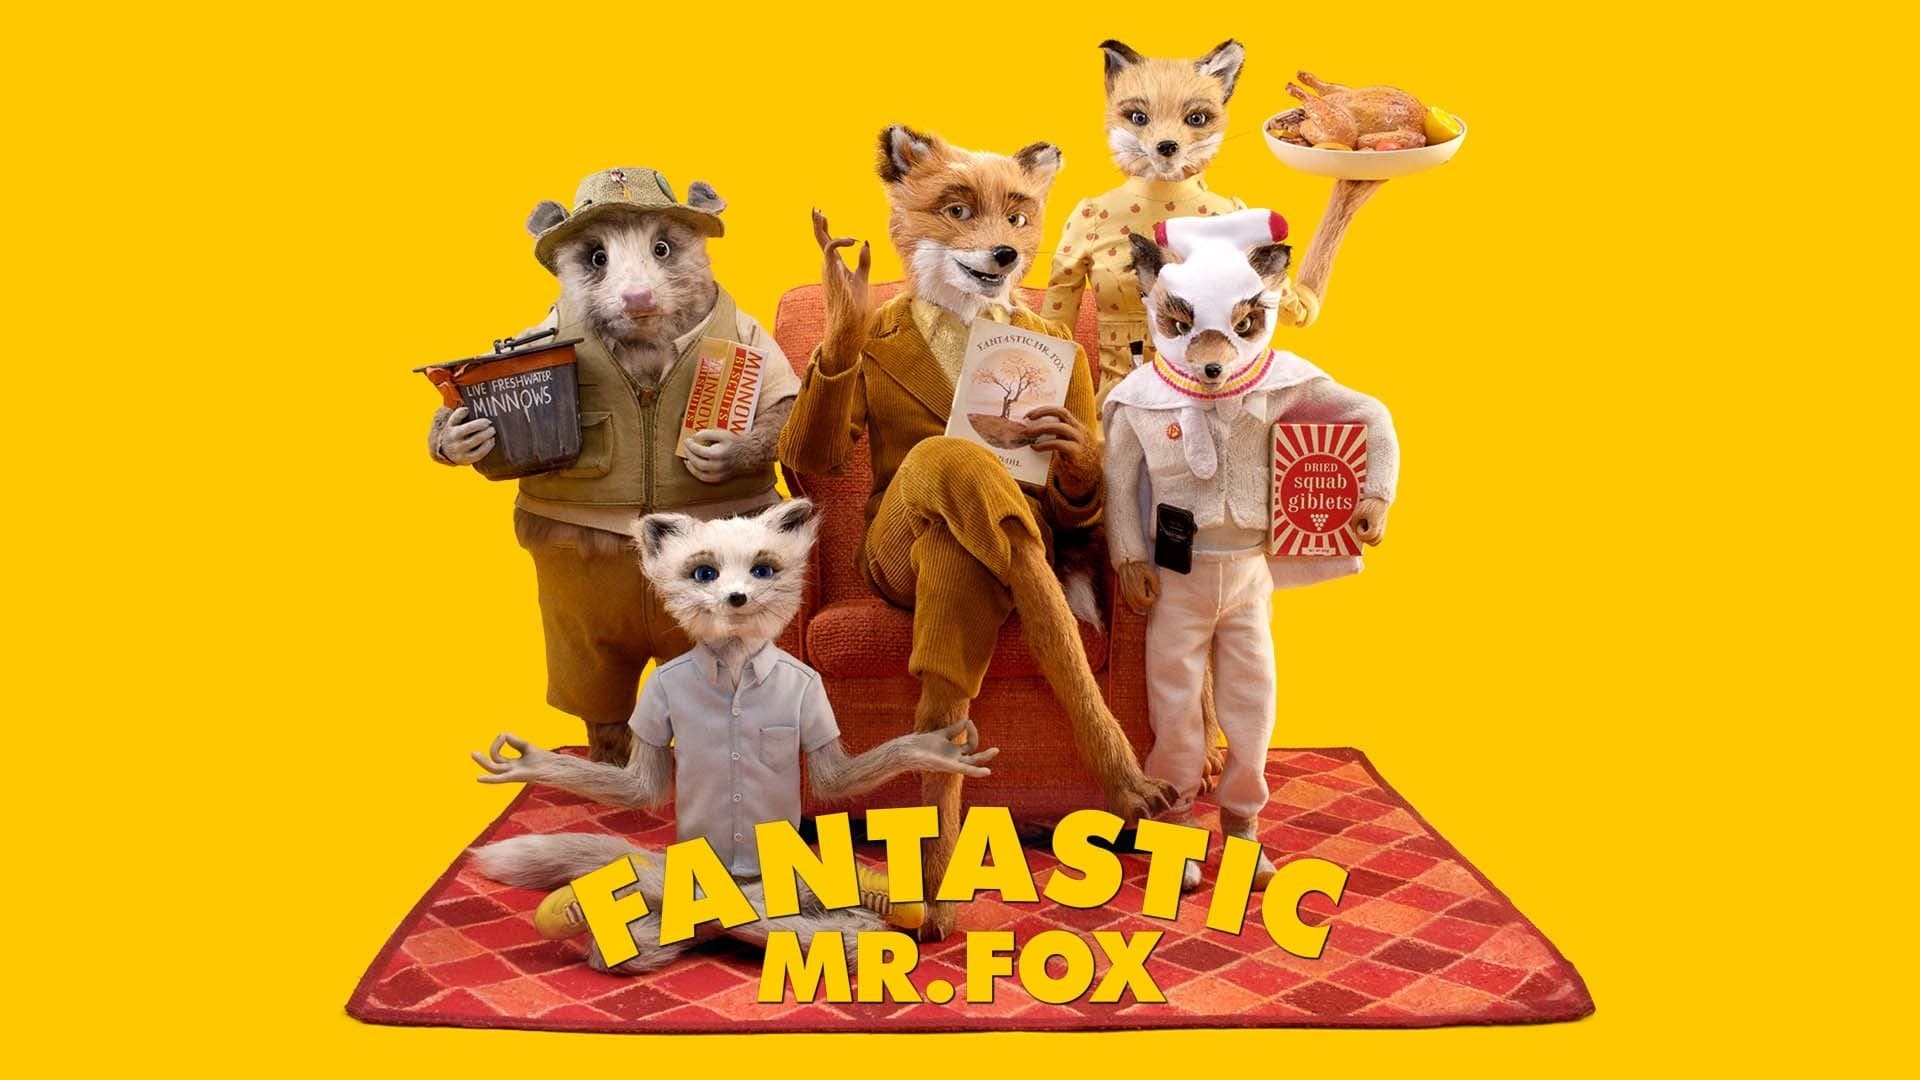 ファンタスティック Mr.FOX